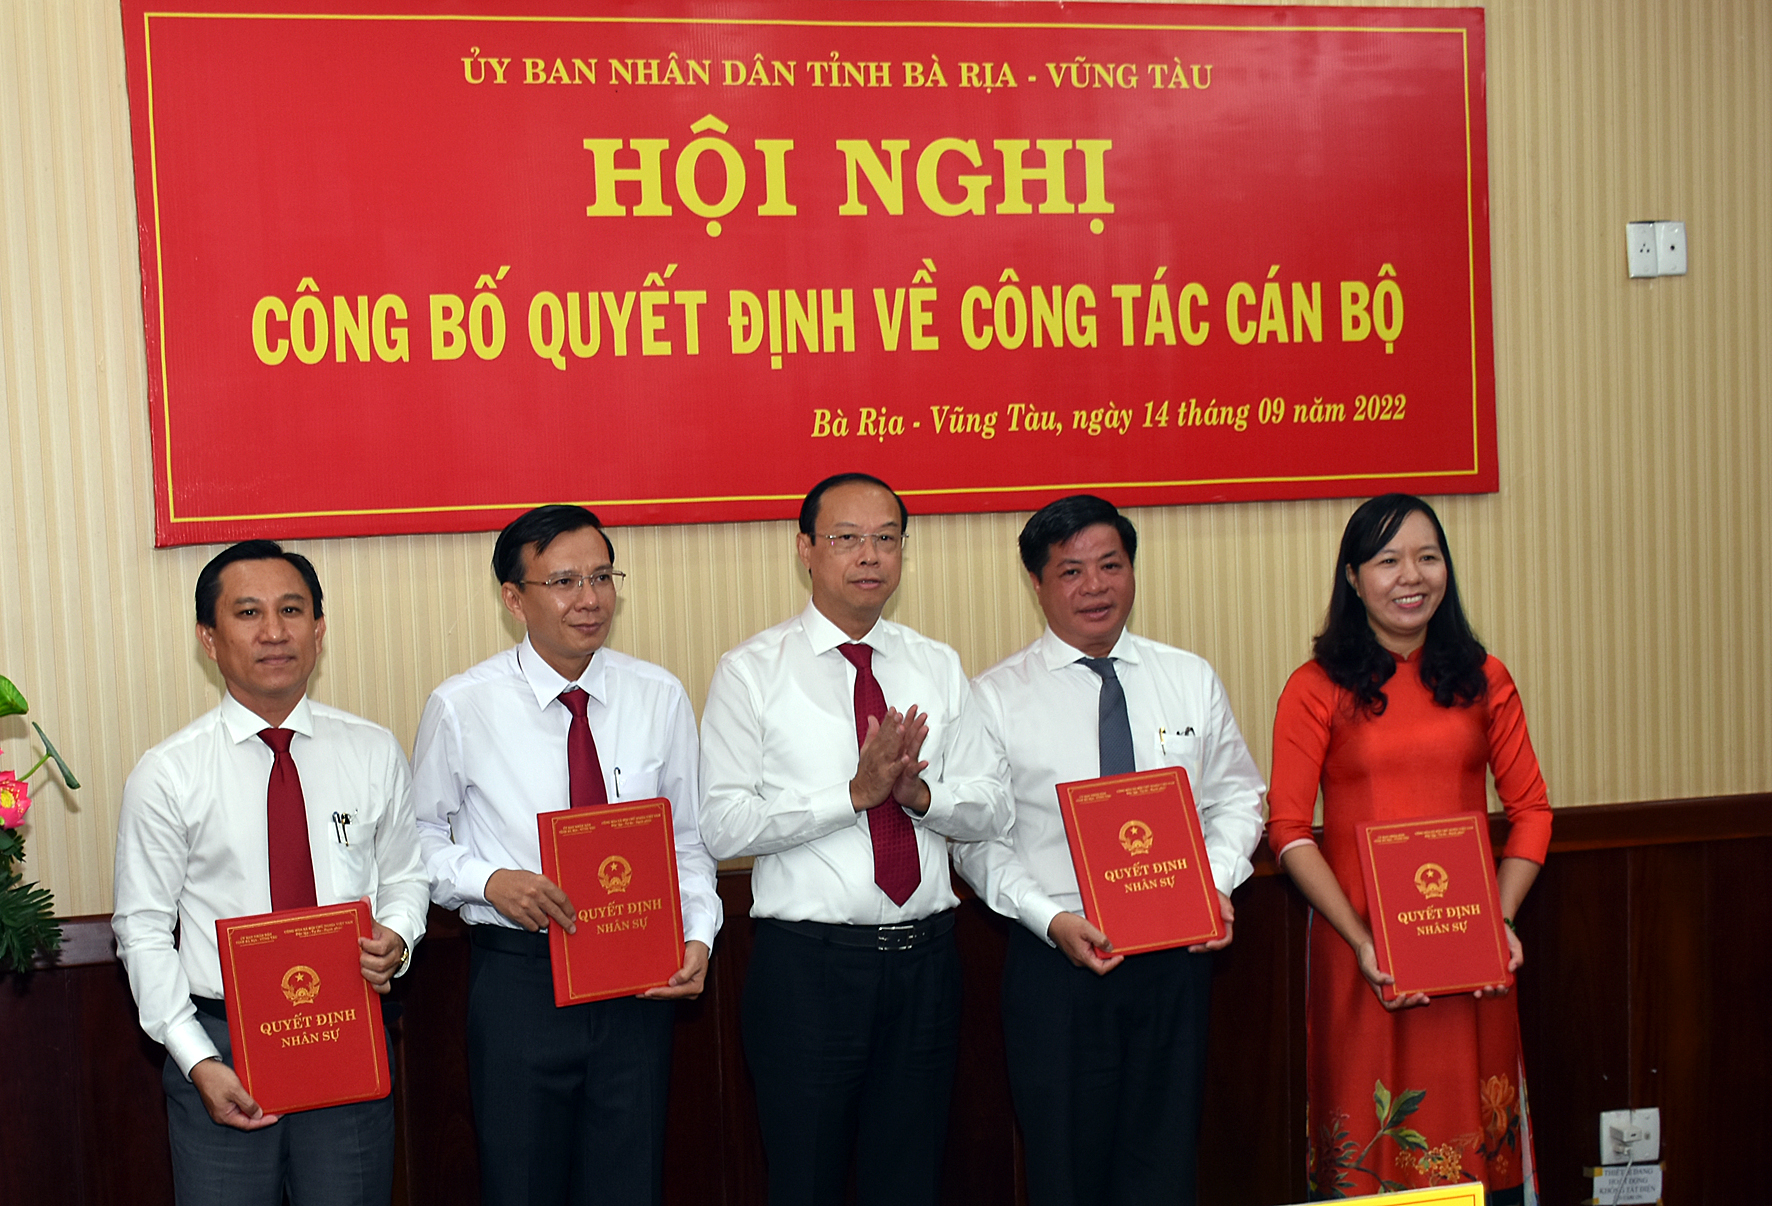 Ông Nguyễn Văn Thọ, Chủ tịch UBND tỉnh đã trao các Quyết định cho ông Võ Thanh Phong (thứ 2 từ phải qua), ông Võ Huy Hoàng (thứ 2 từ trái qua), ông Đỗ Hữu Hiền, bà Nguyễn Thị Ánh Hồng.